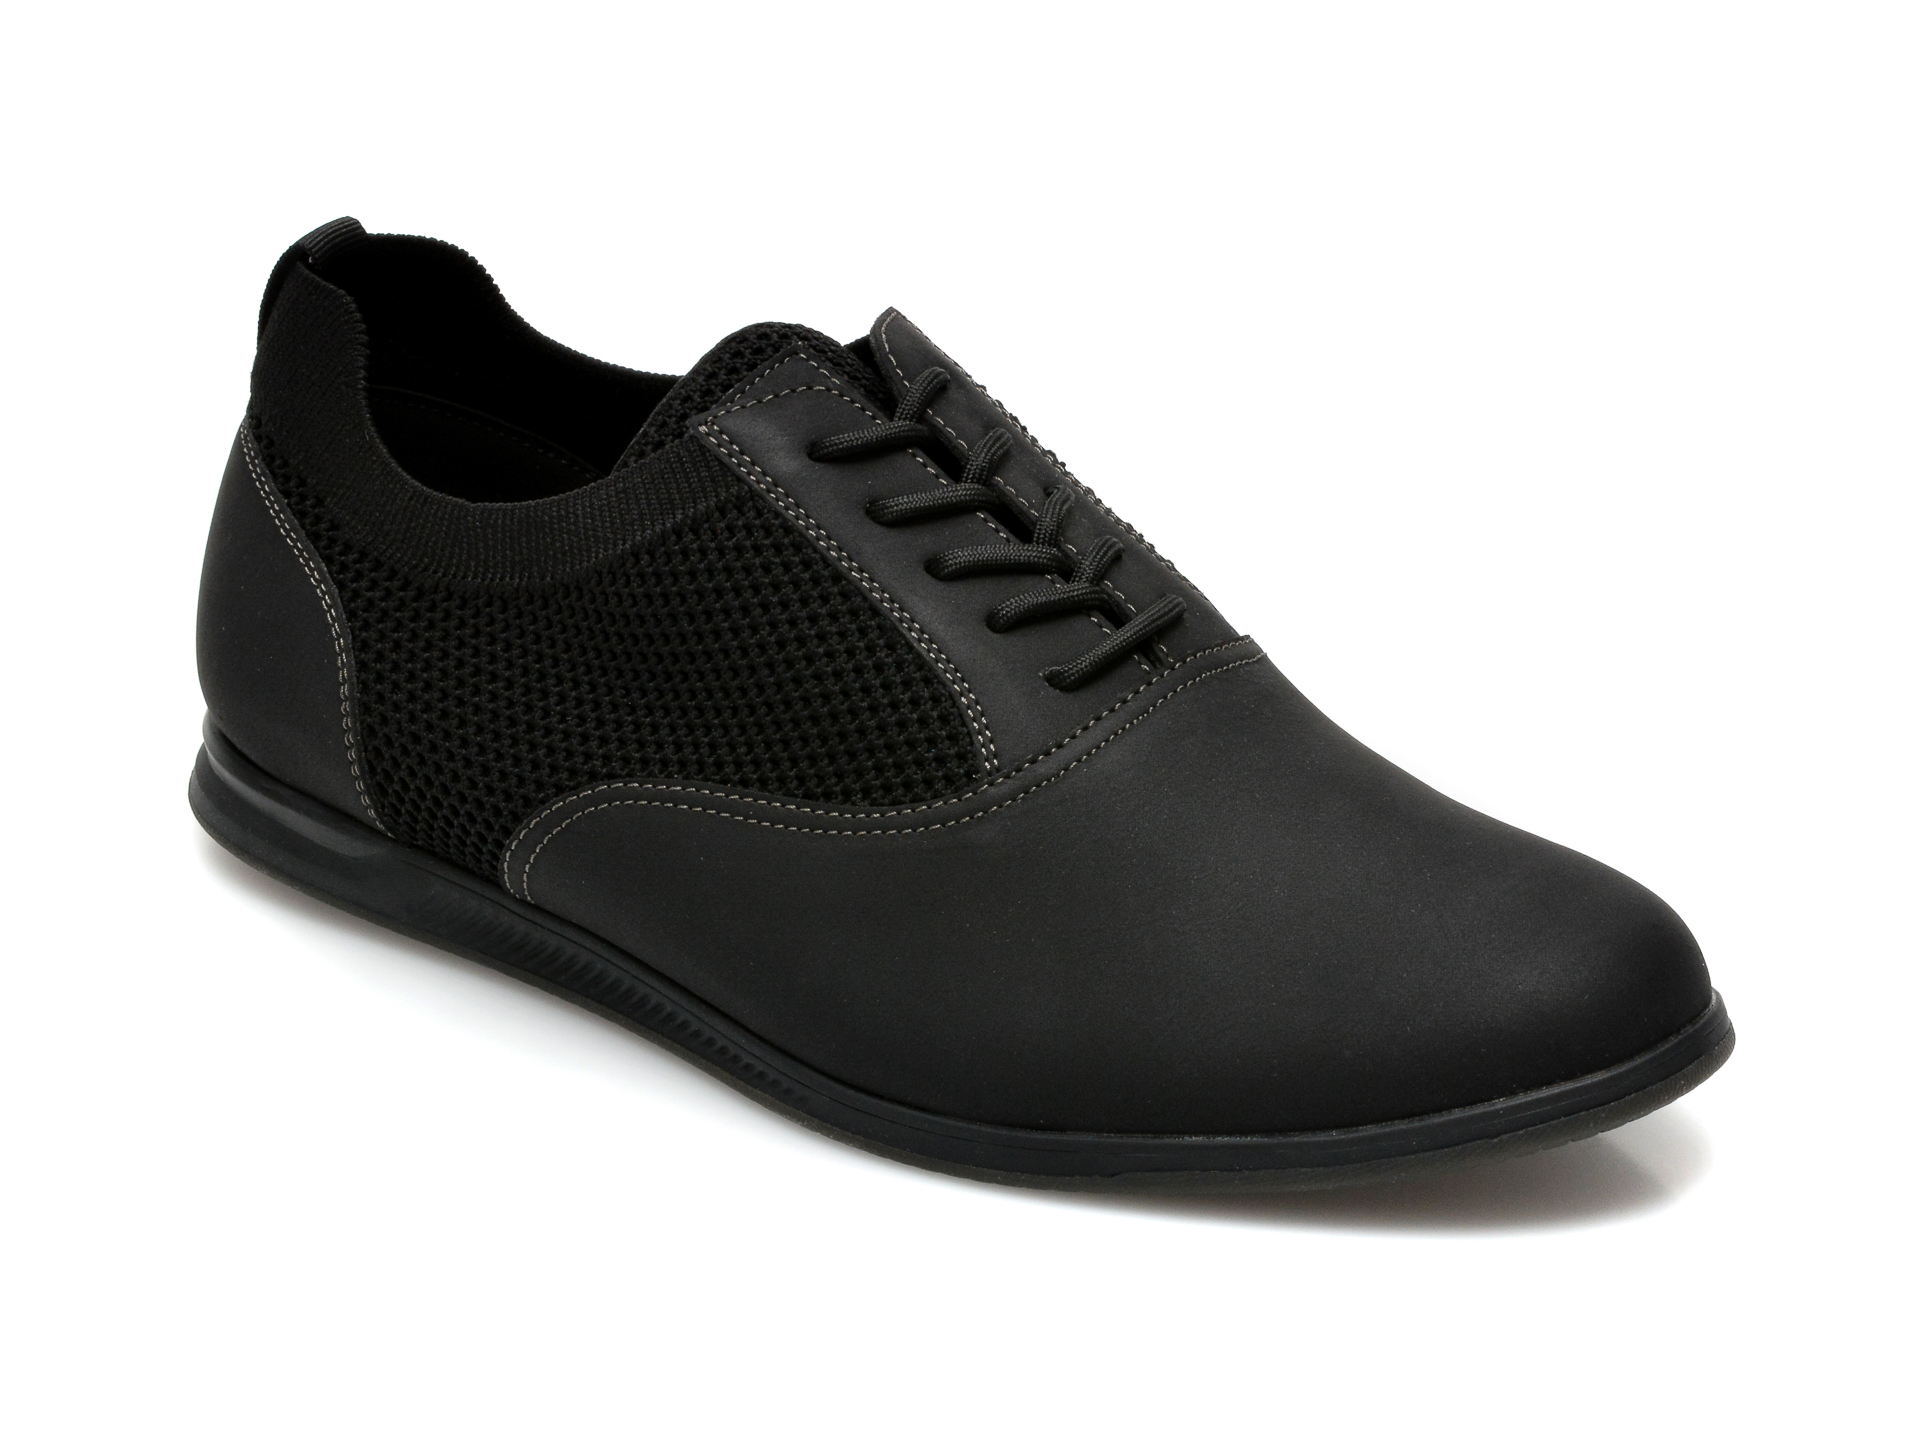 Pantofi ALDO negri, Ballan001, din piele ecologica ALDO imagine 2022